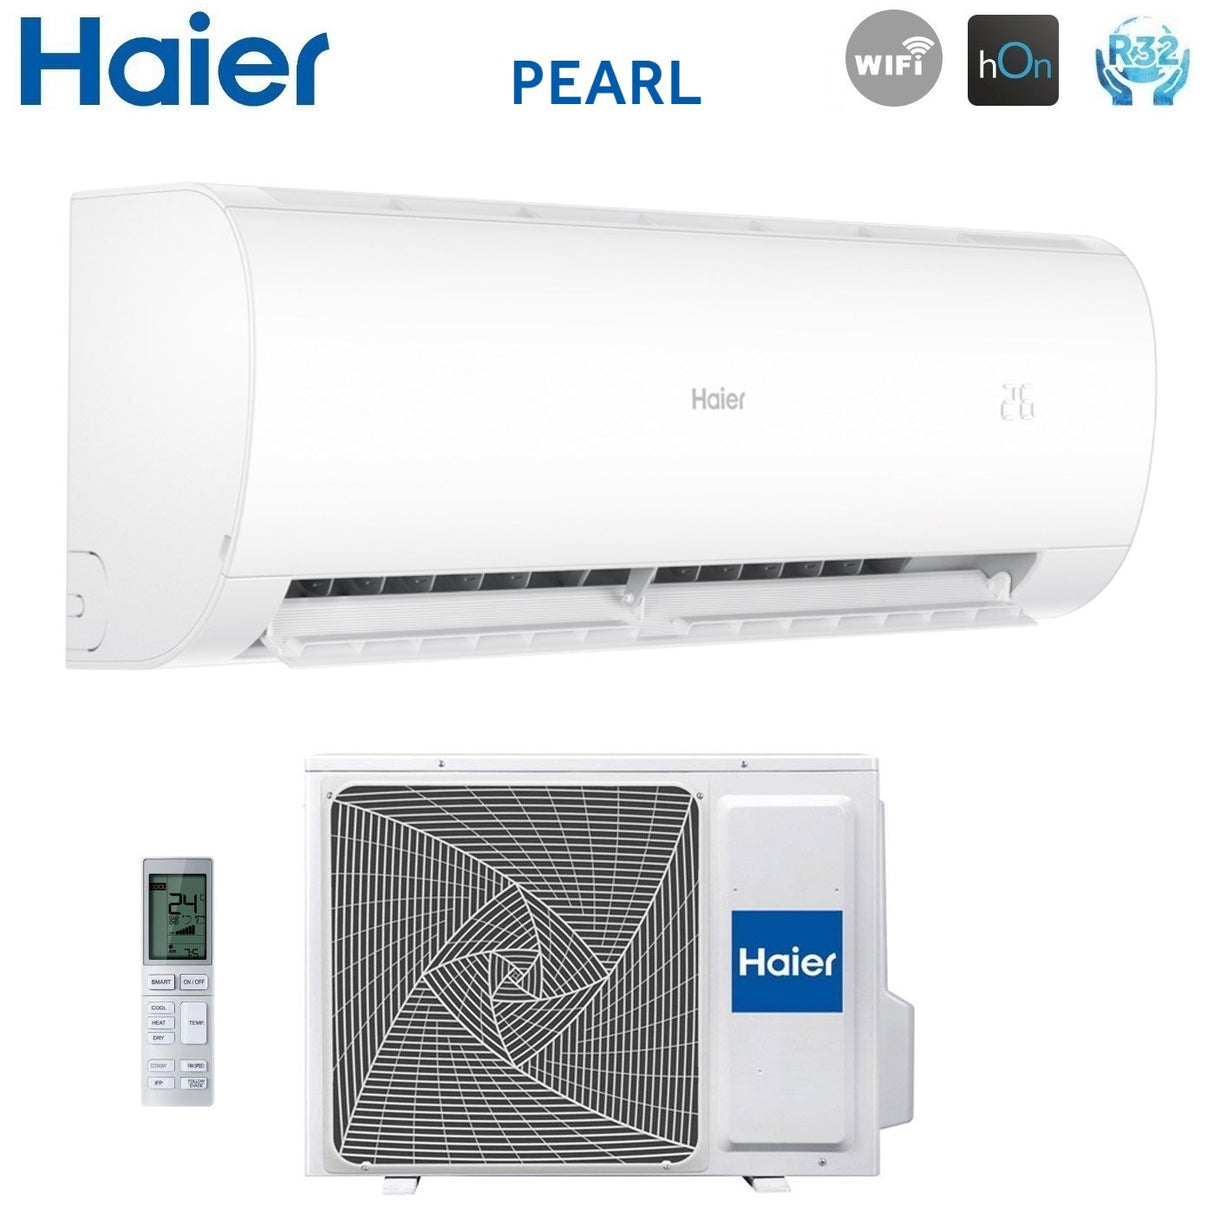 immagine-4-haier-climatizzatore-condizionatore-haier-inverter-serie-pearl-18000-btu-as50pdahra-r-32-wi-fi-integrato-aa